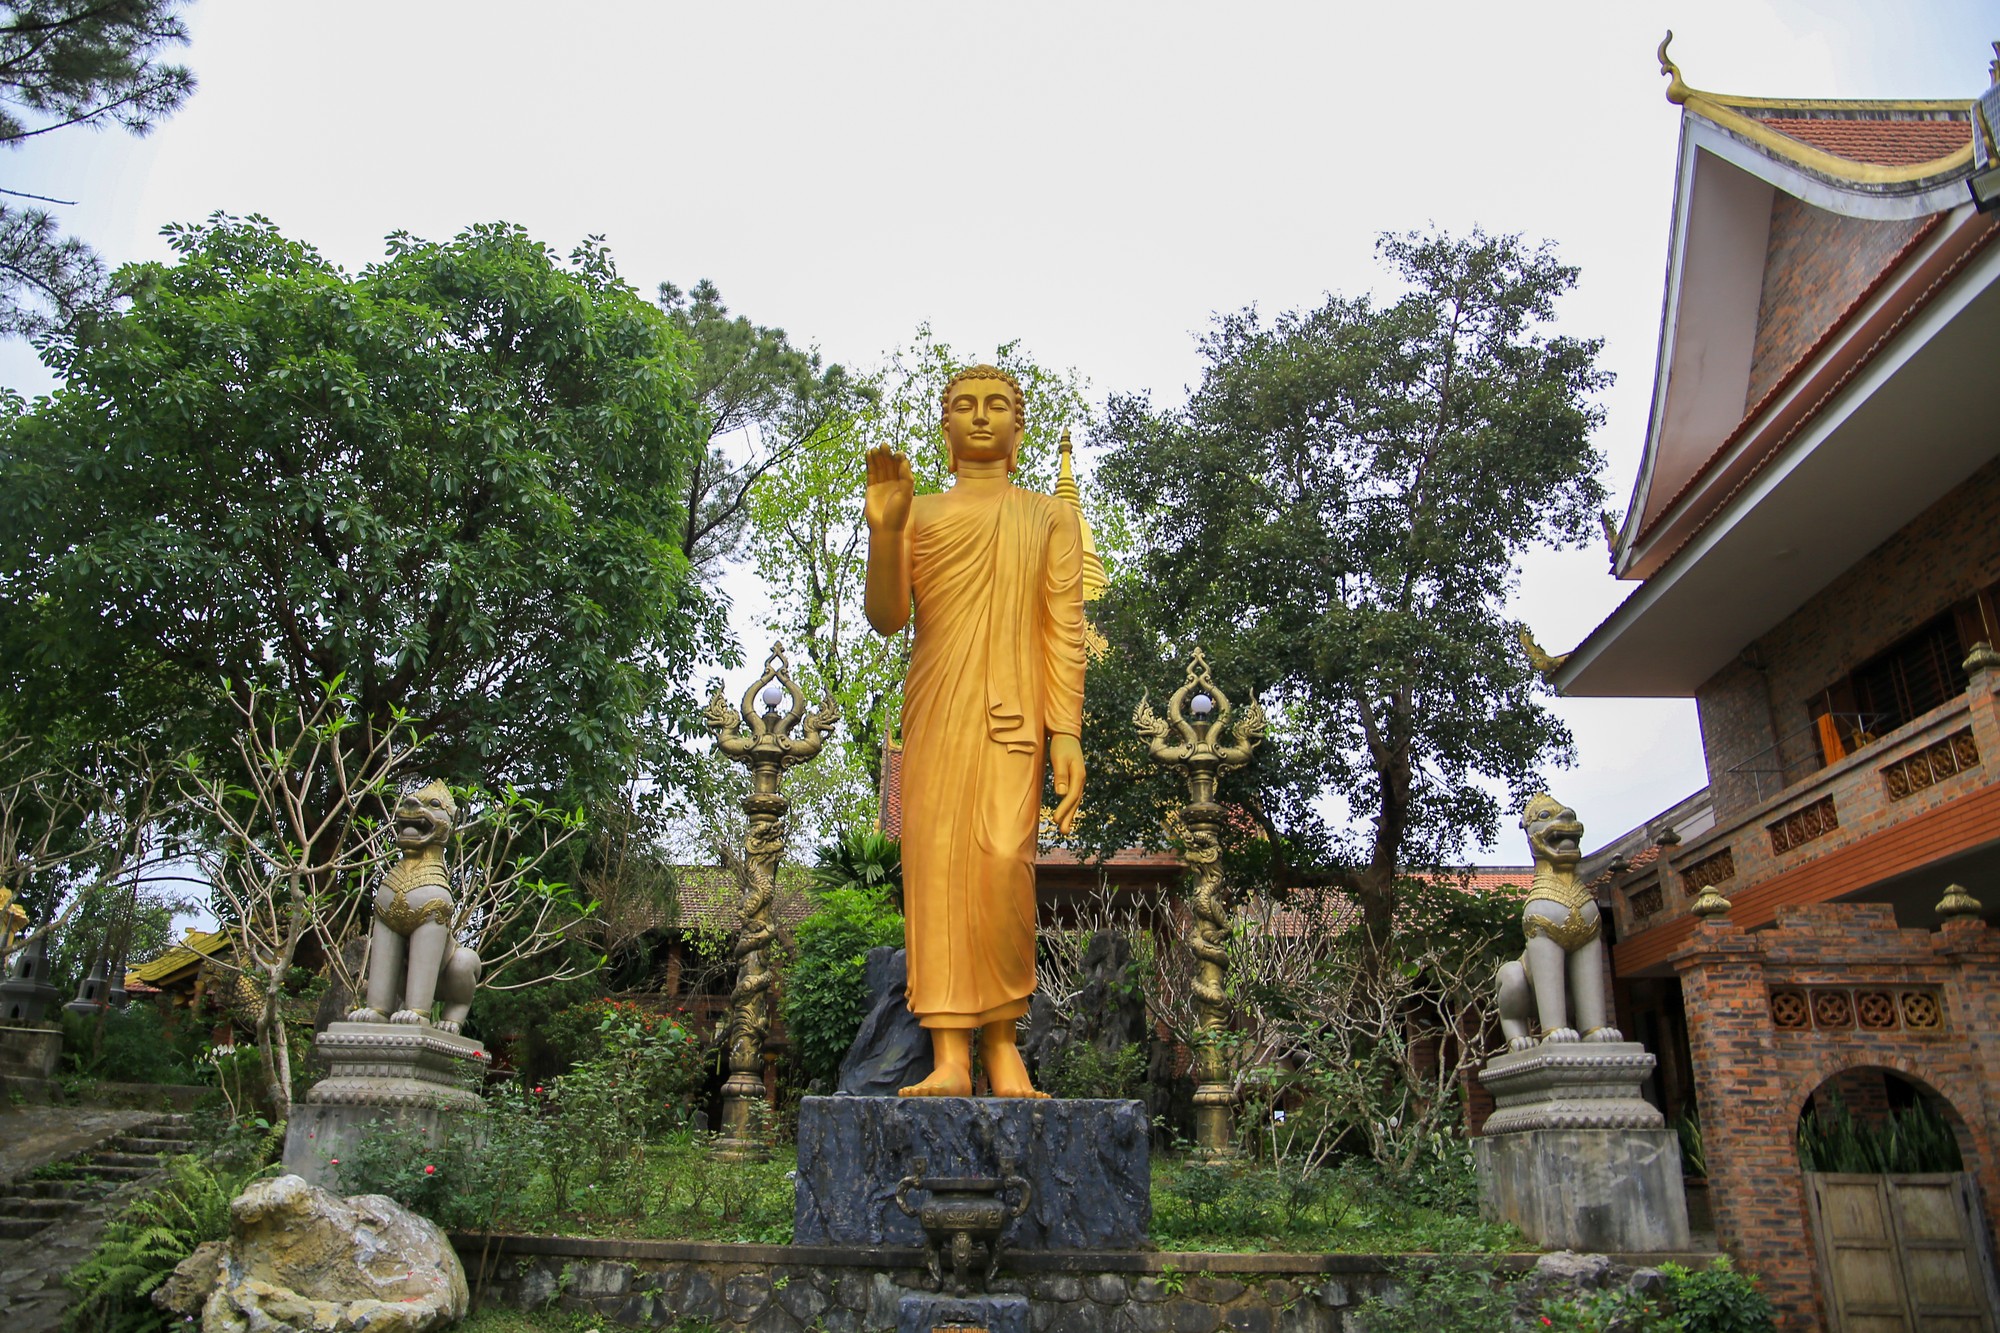 Đến sân chùa sẽ có nhiều công trình kiến trúc khác nhau, trong đó có bức tượng Đức Phật bằng đồng với dáng đứng trang nghiêm. Sau bức tượng là một tòa nhà để chuông với kiến trúc ấn tượng của xứ chùa Vàng.